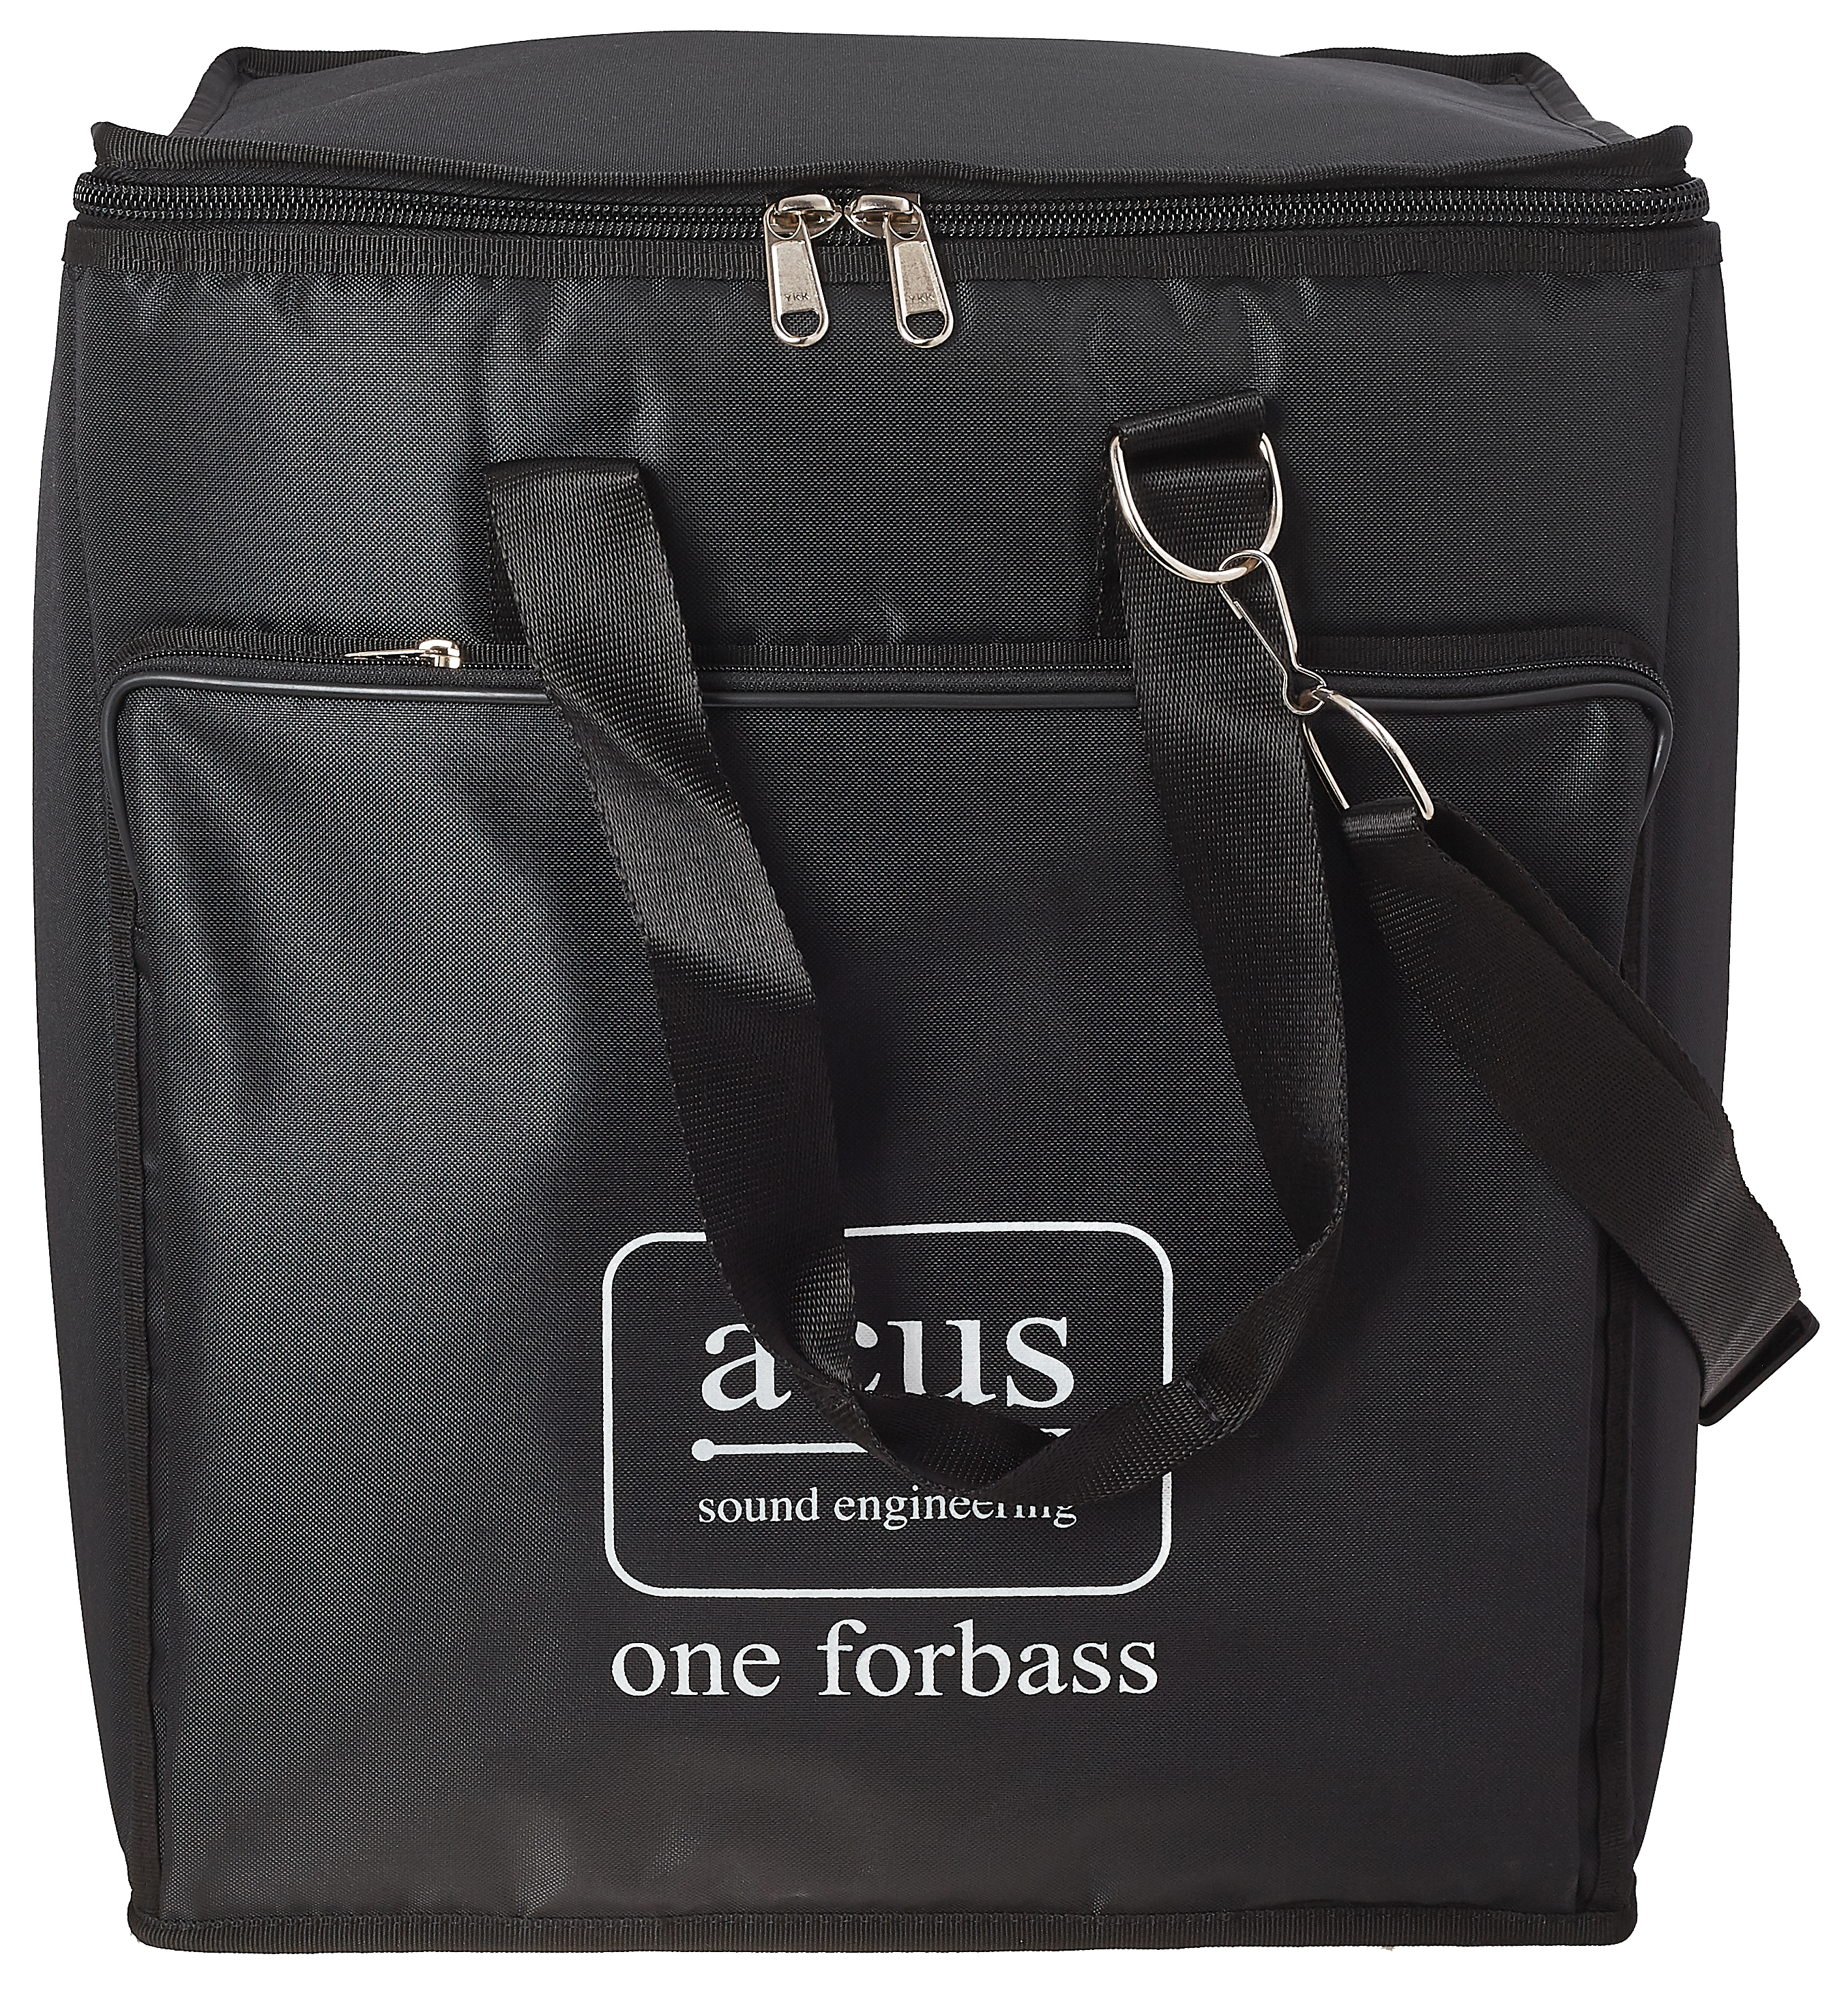 ACUS Oneforbass Bag | Obrázok 1 | eplay.sk